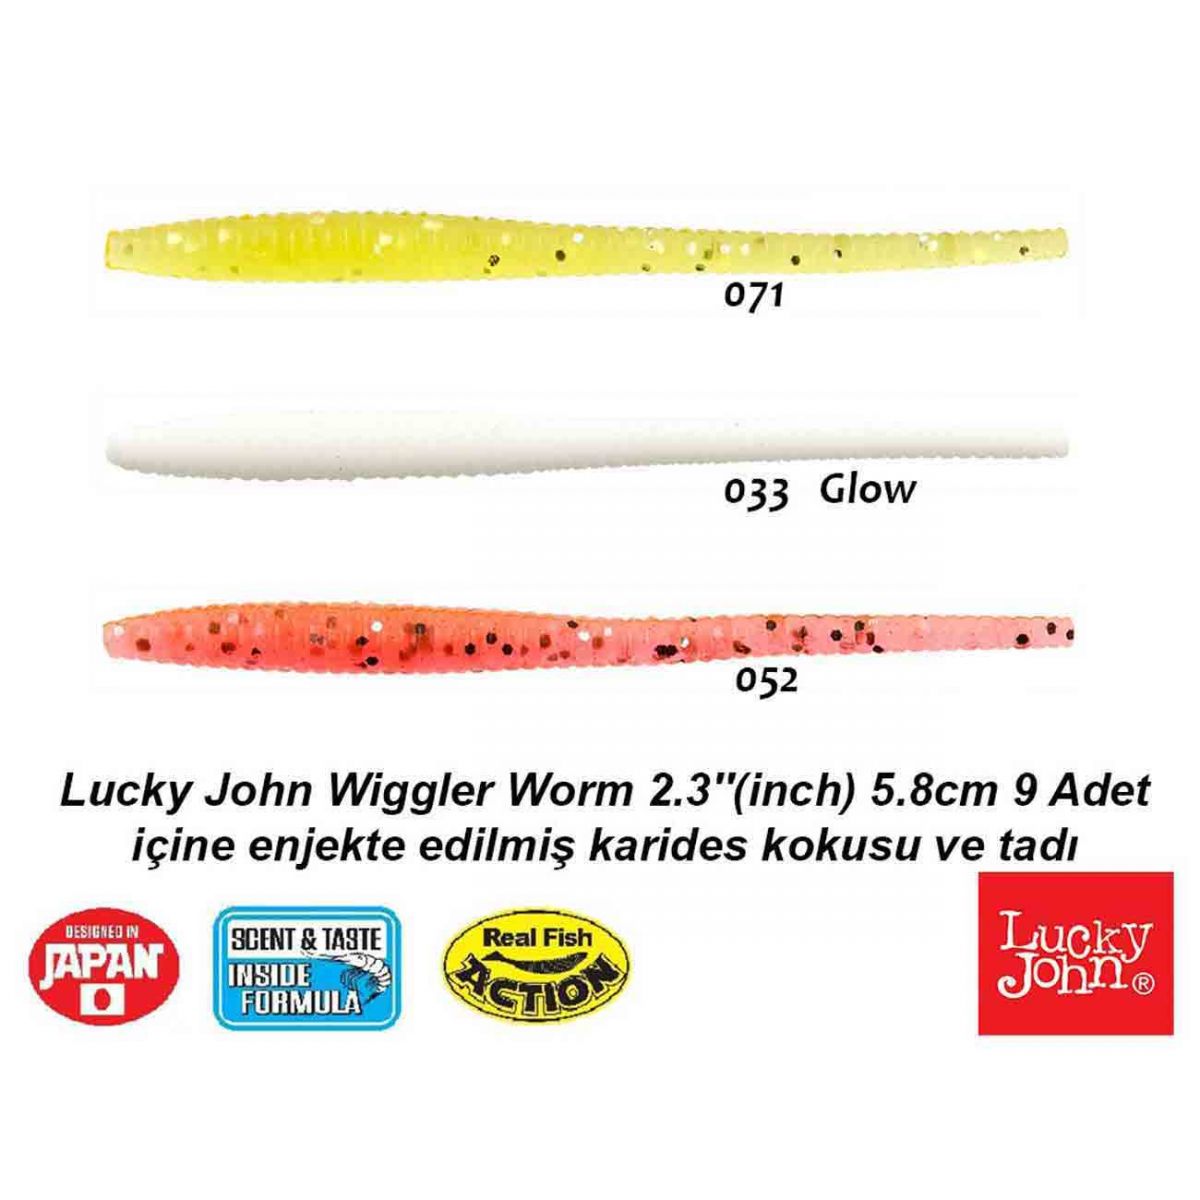 Lucky John Wiggler Worm 2.3 İnch (5.8cm) Lrf Silikon Yem,paket içerisinde 9 adet mevcuttur.